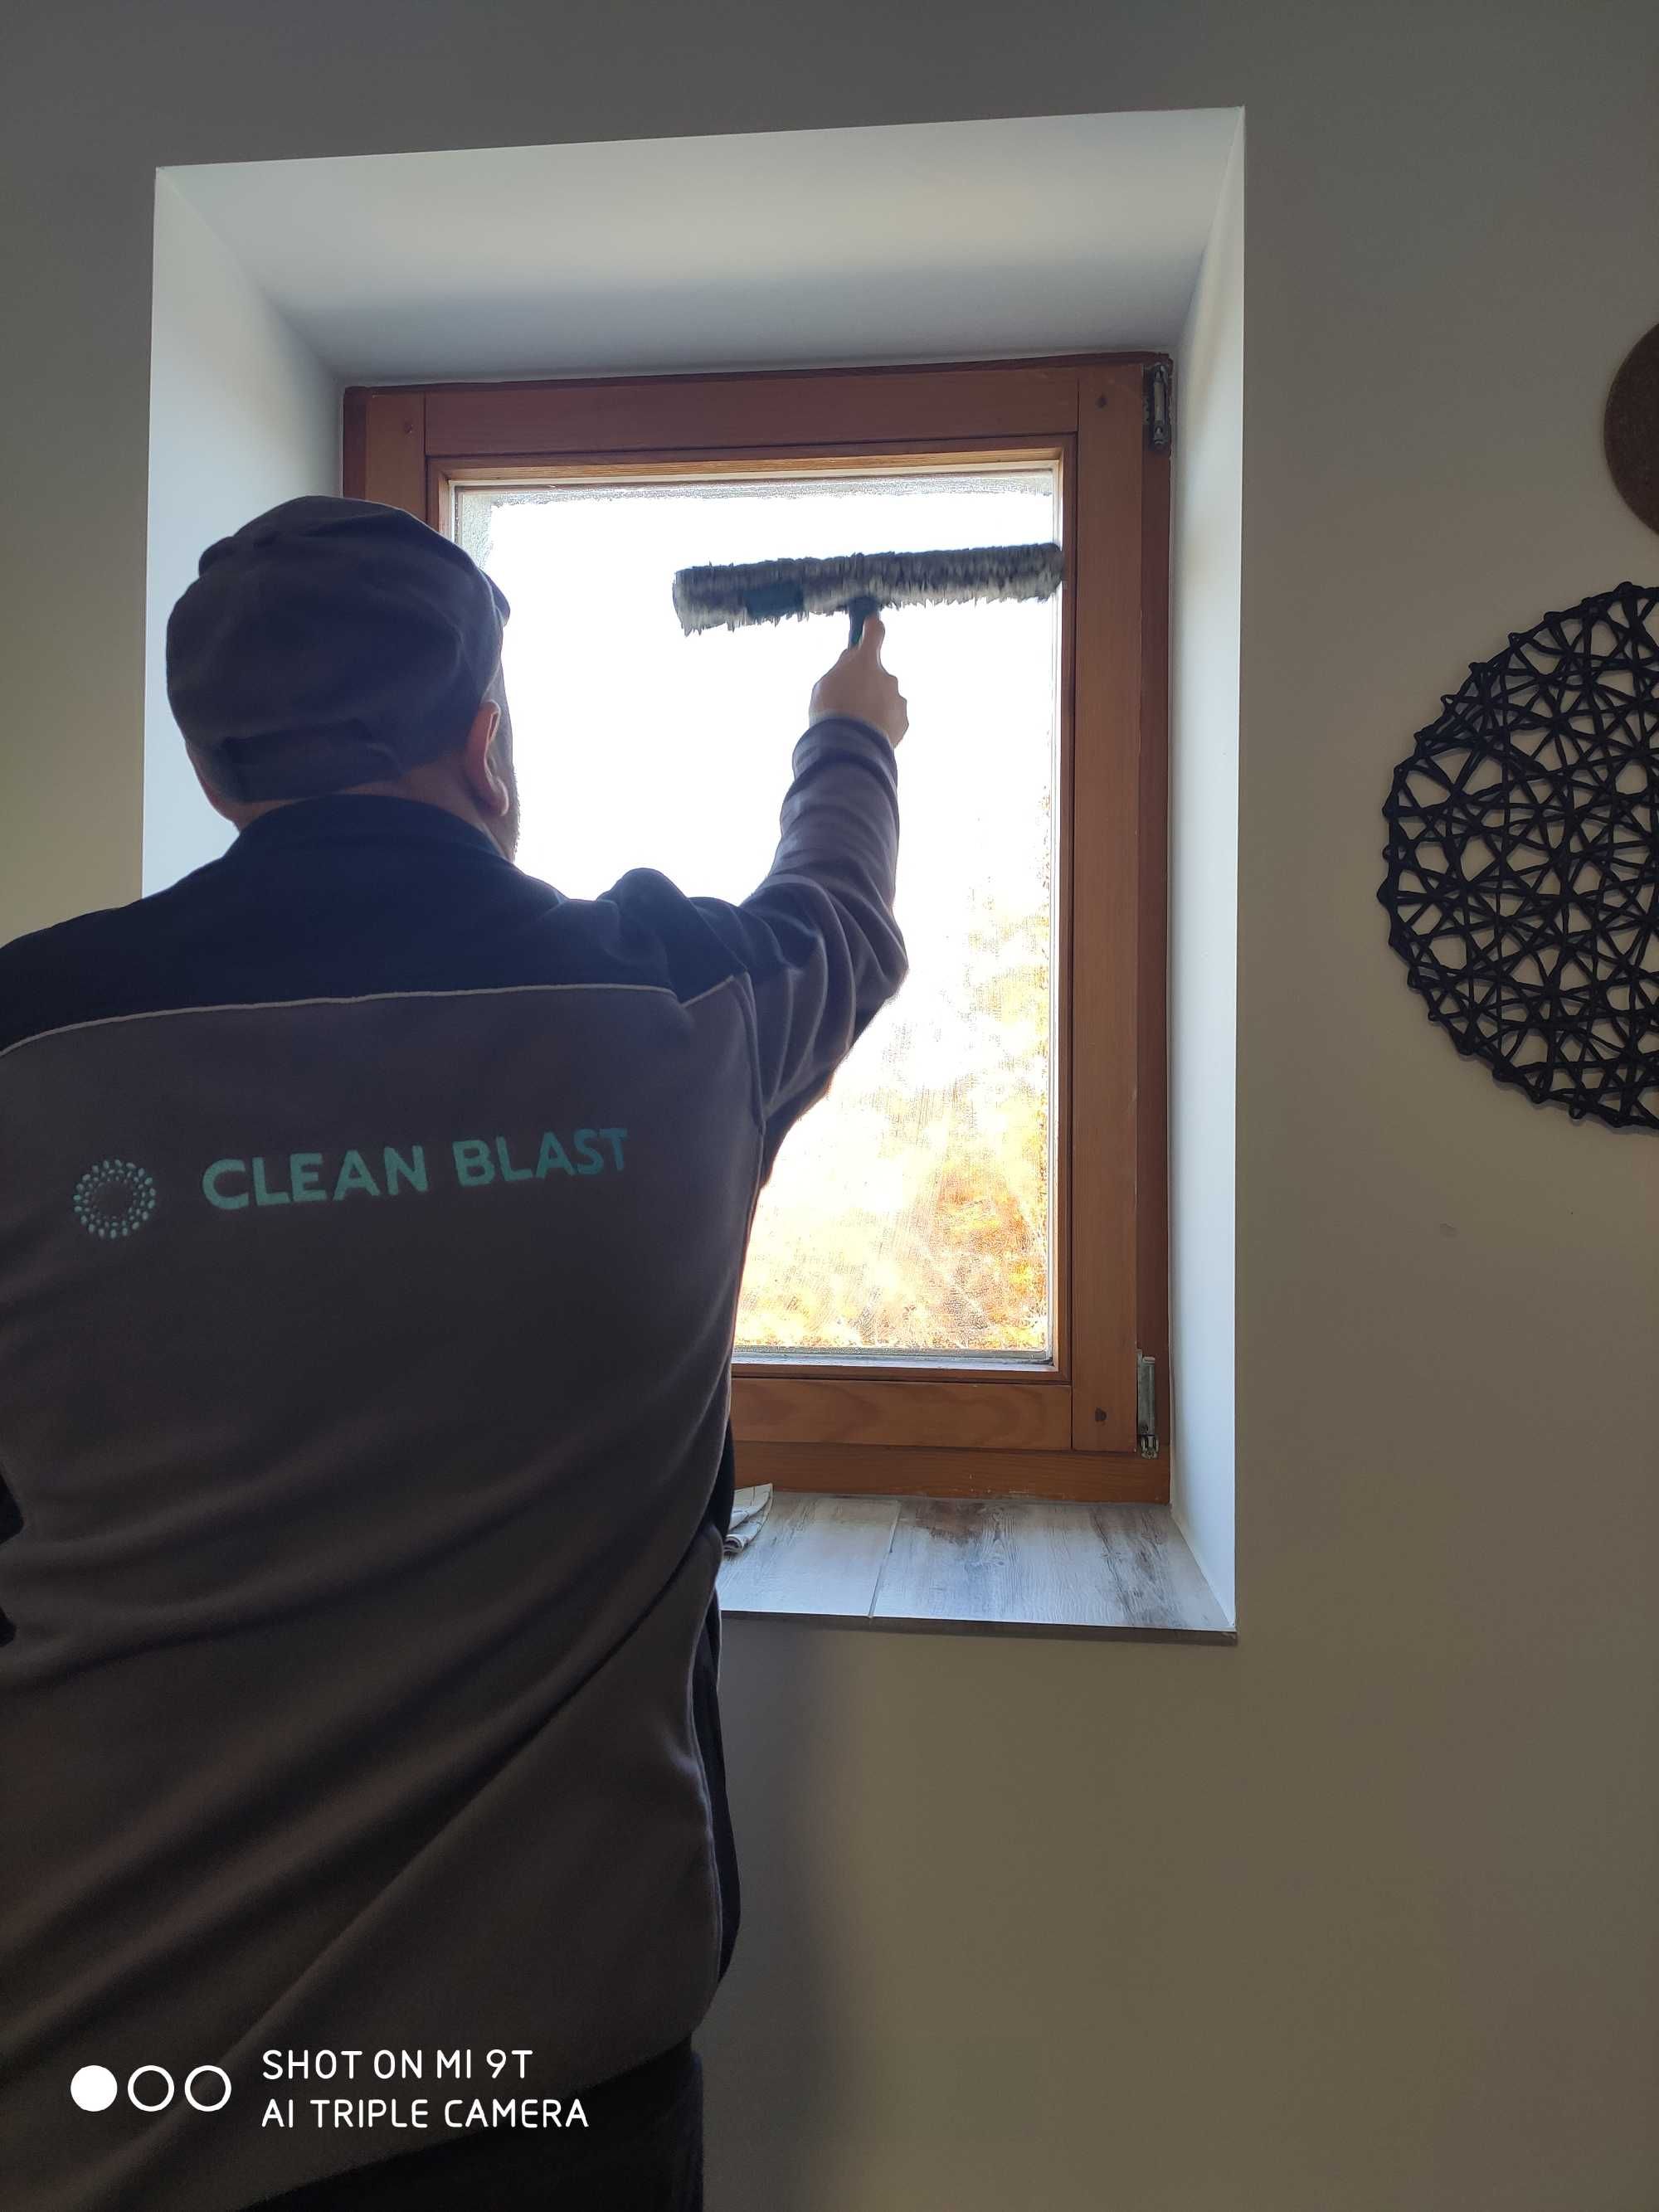 Profesjonalna firma sprzątająca Clean Blast -usługi sprzątające